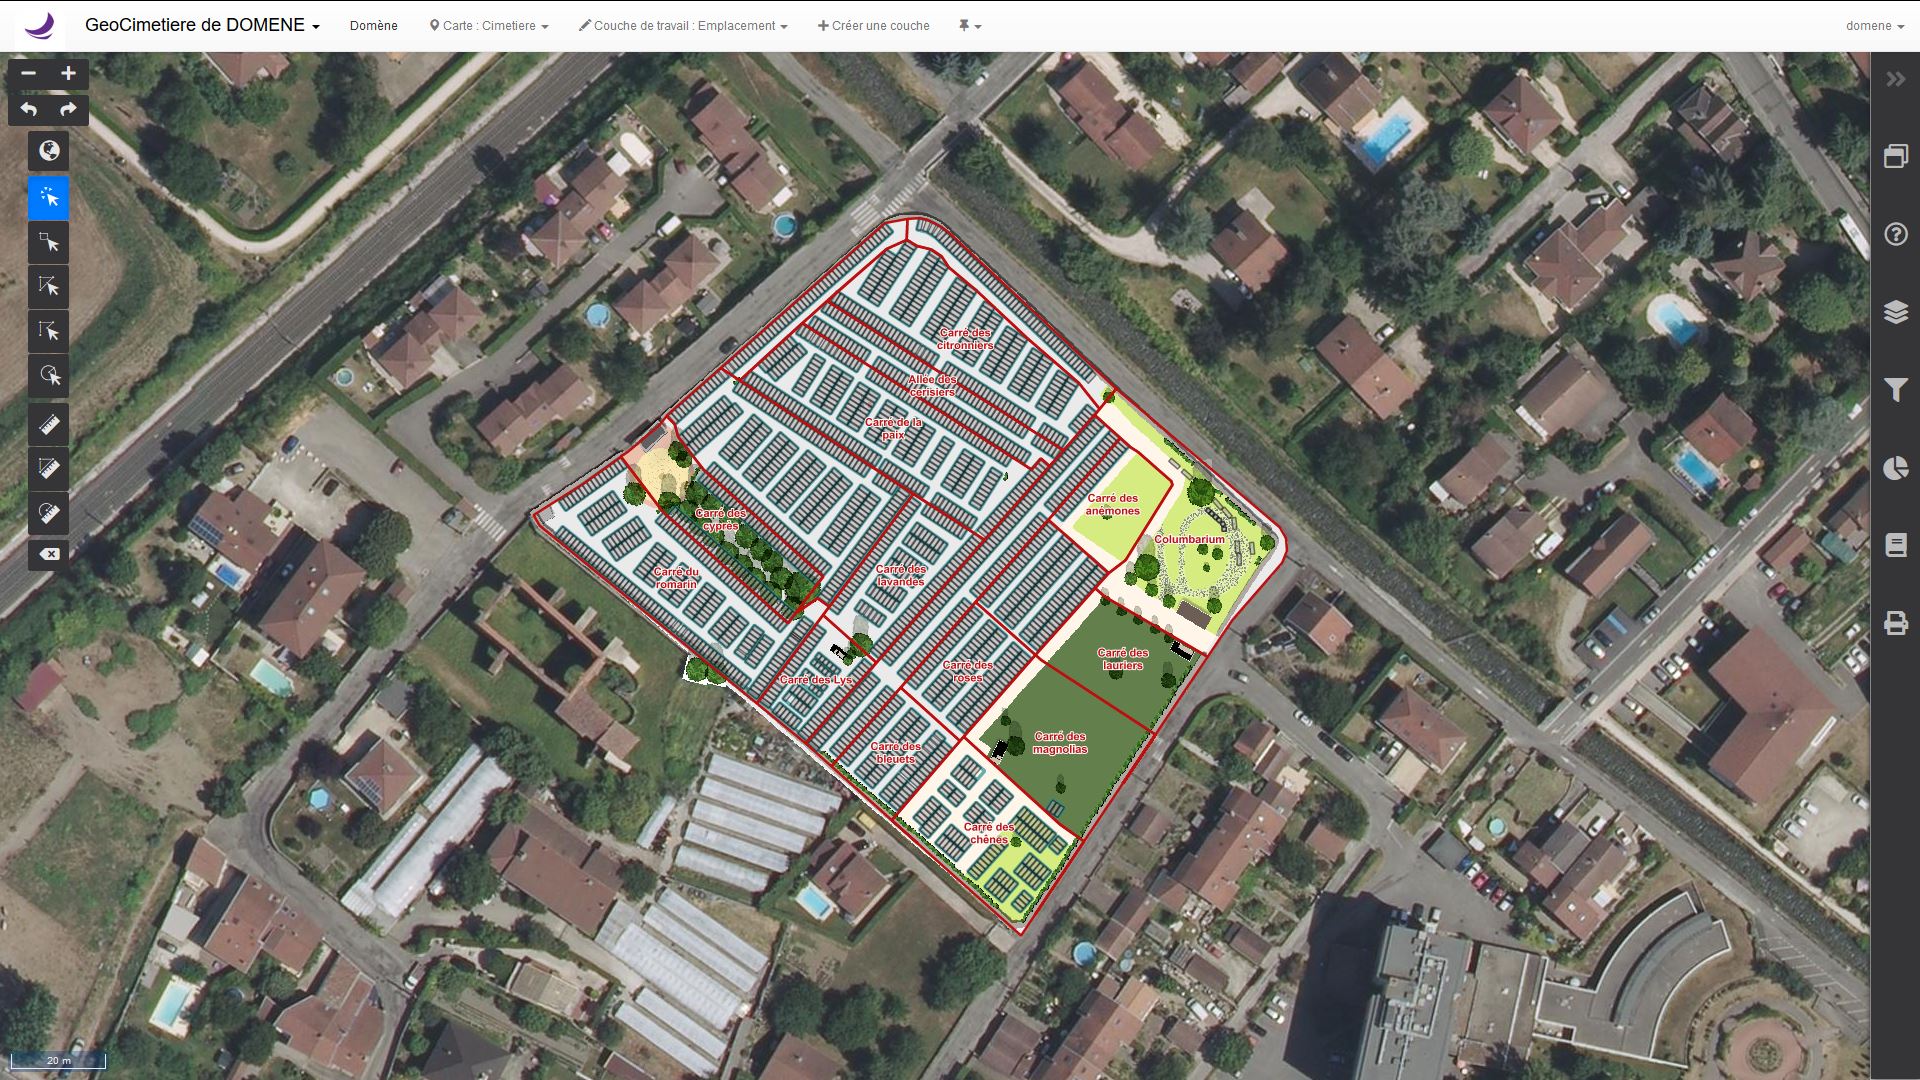 GeoCimetiere : visualisation cartographique d'un cimetière